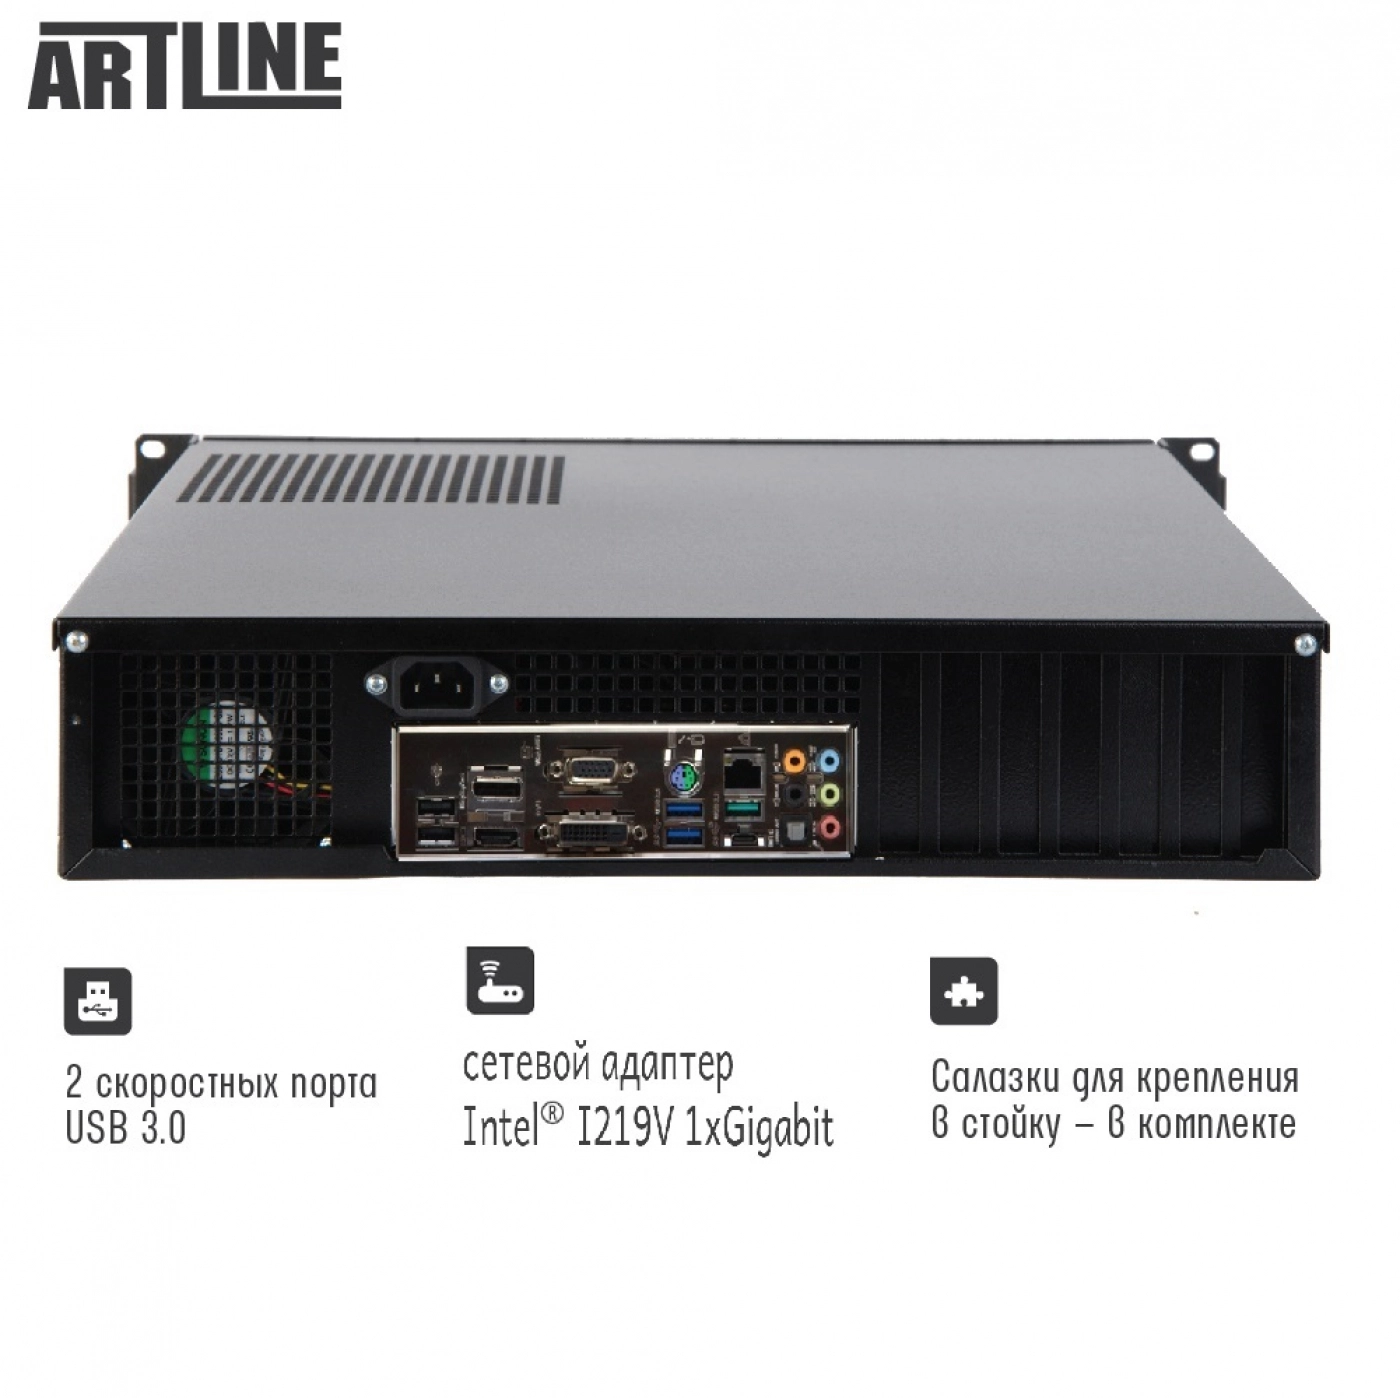 Купить Сервер ARTLINE Business R15v09 - фото 3